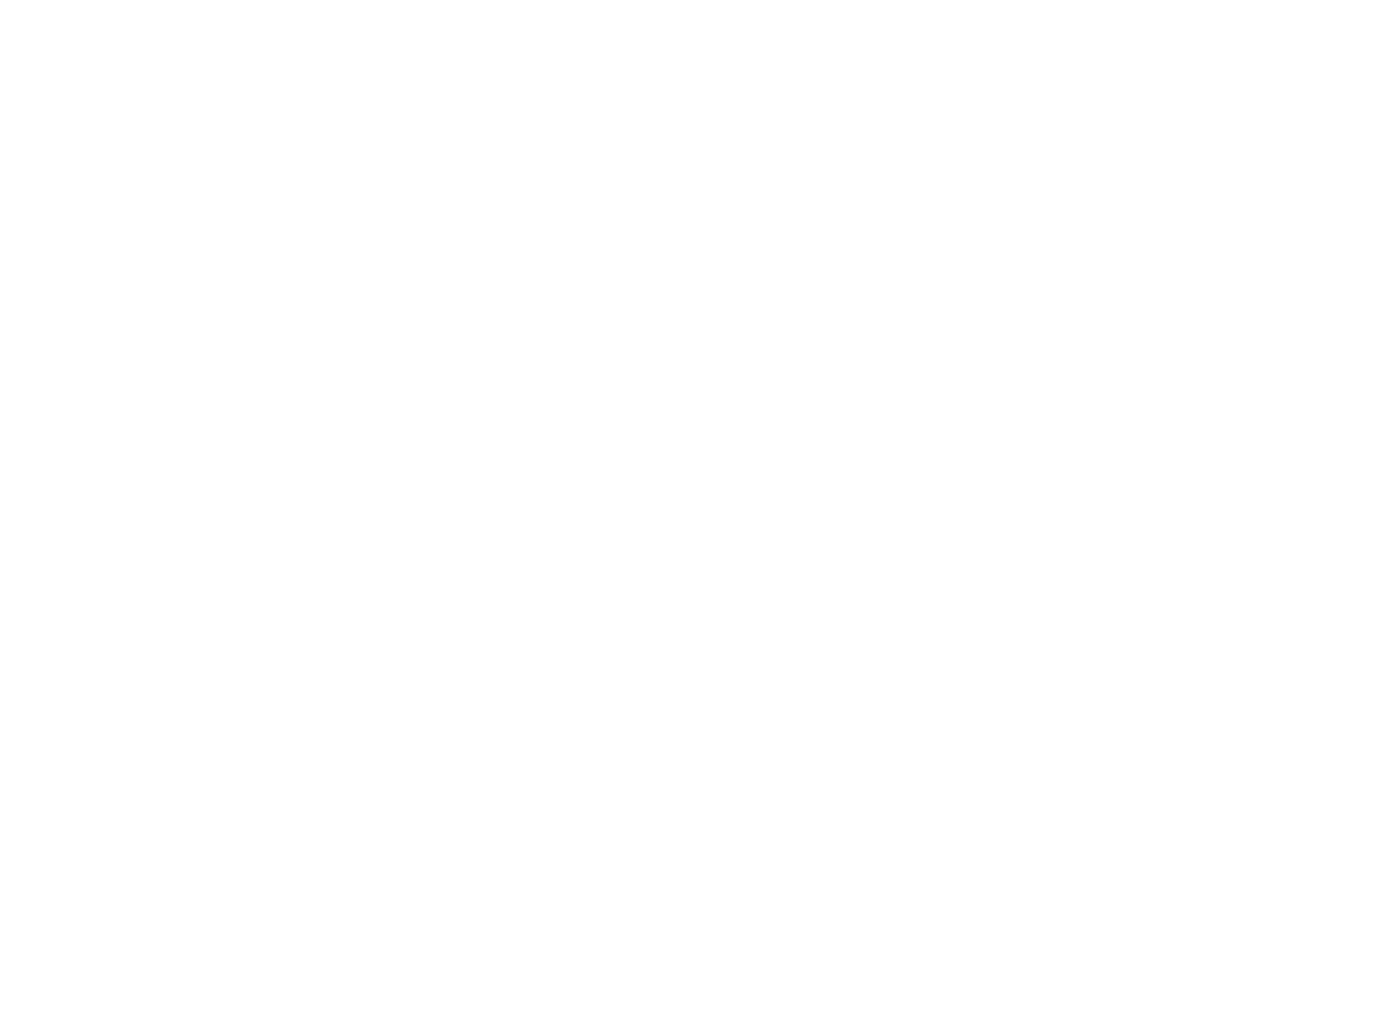 Icahn: The Restless Billionaire logo